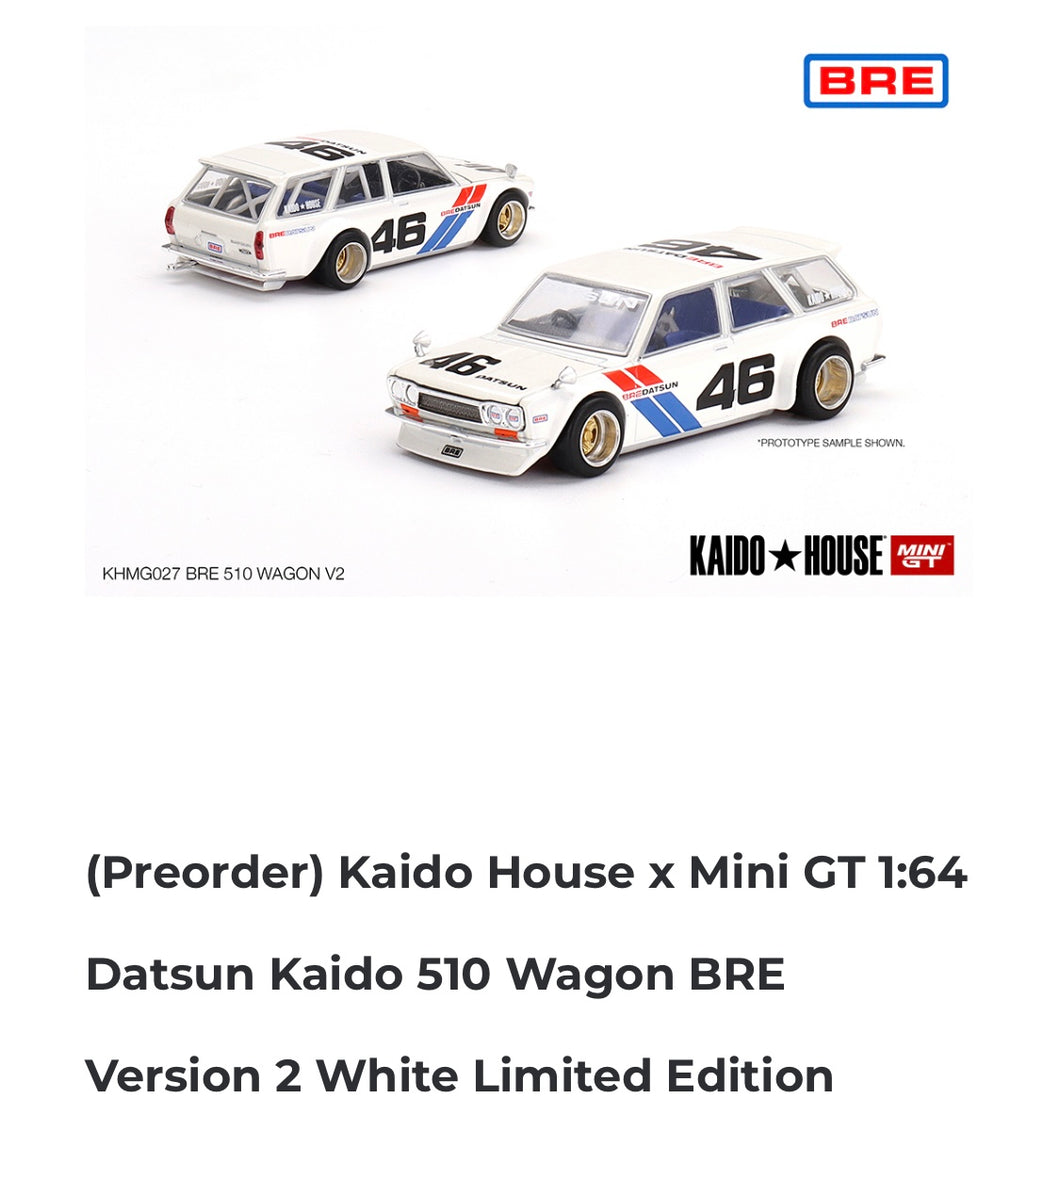 Preorder Kaitohouse x Mini GT 1:64 Datsun Kaido 510 Wagon BRE Ver 2 White